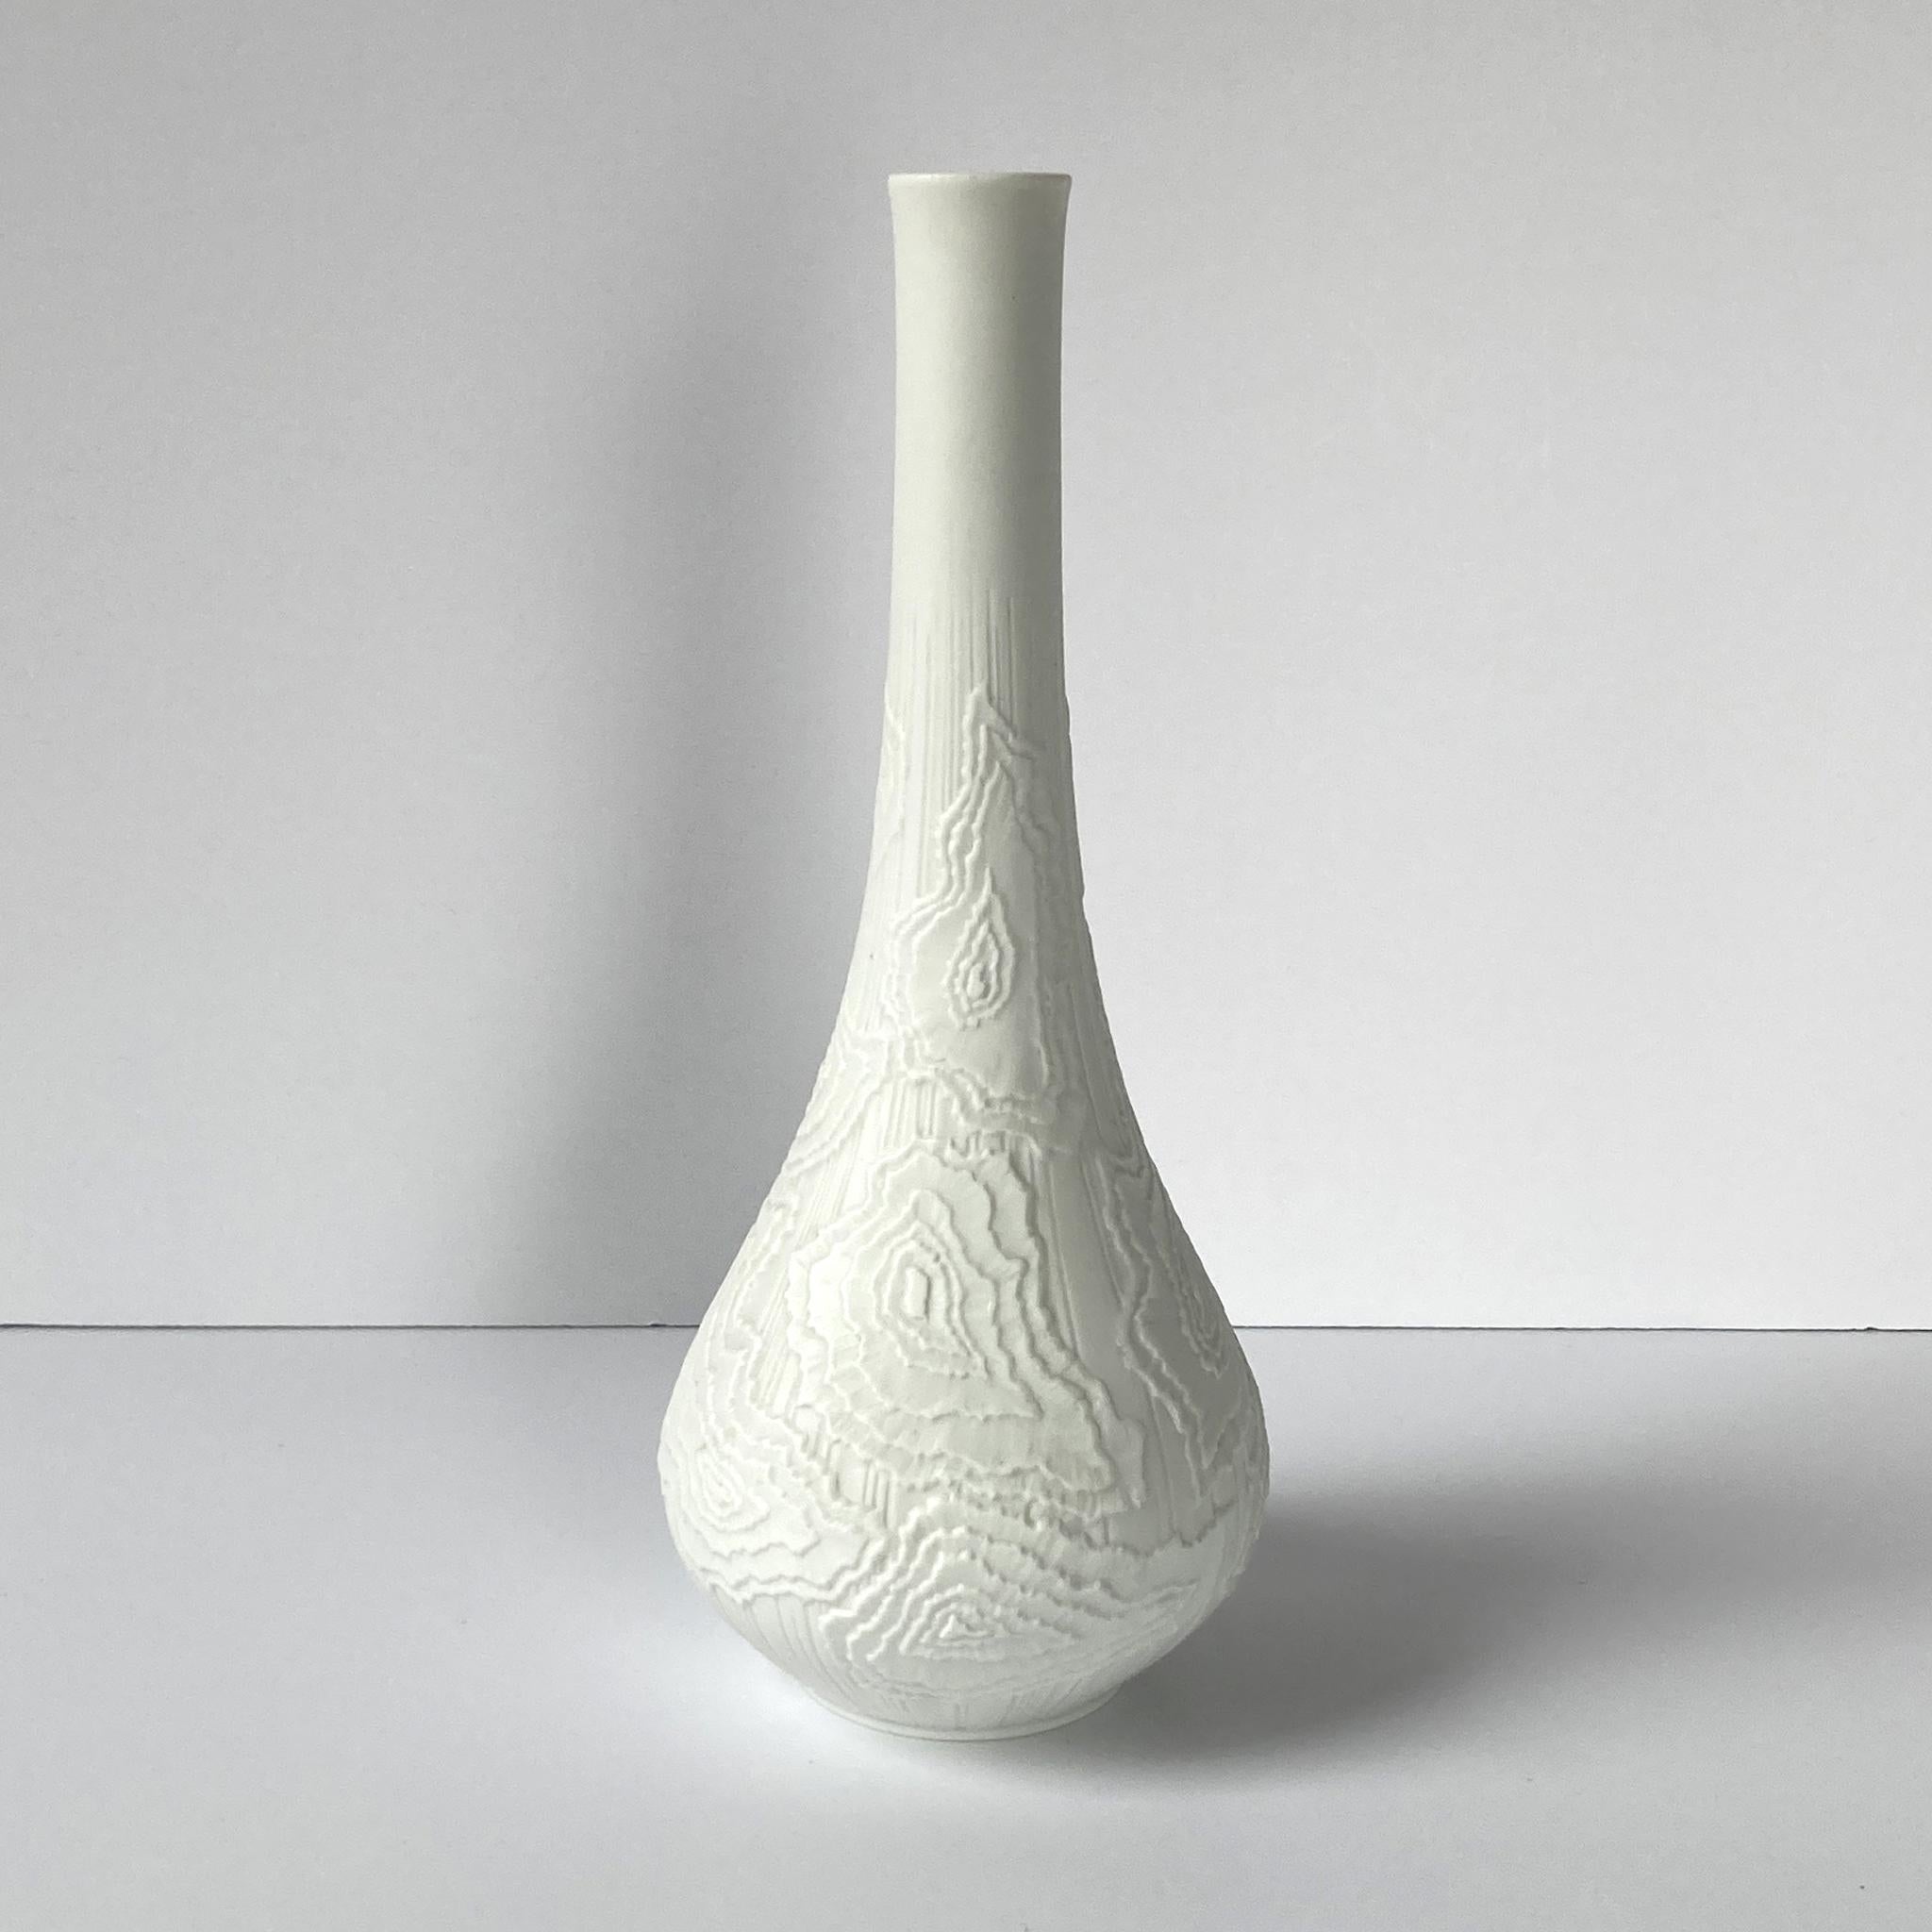 German AK Kaiser Textured White Bisque Vase, 1970s For Sale